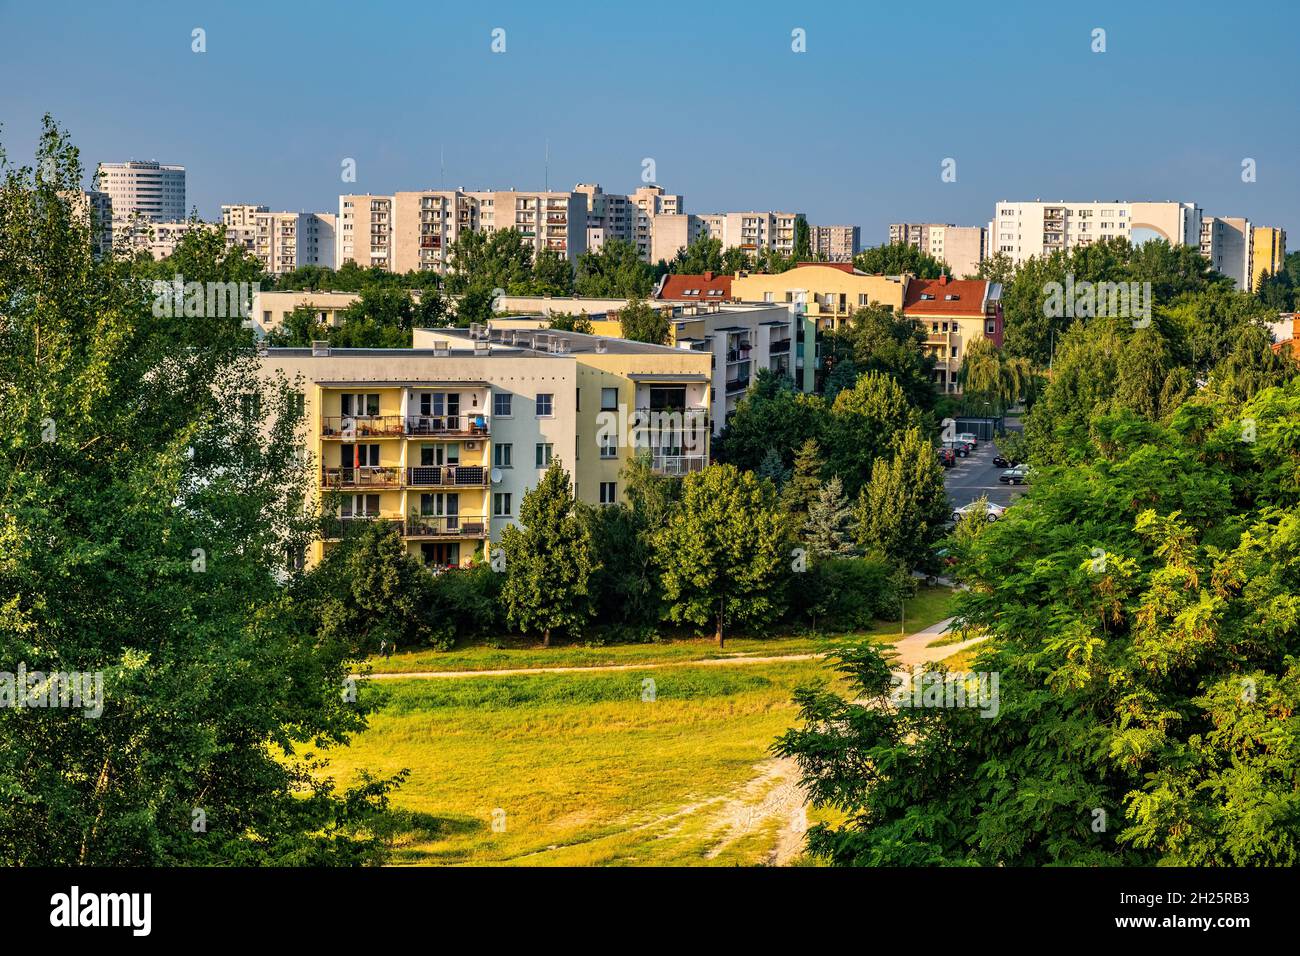 Varsovie, Pologne - 24 juillet 2021 : vue panoramique sur le quartier de Kabaty et Ursynow avec des développements résidentiels intensifs près de la forêt de Las Kabacki Banque D'Images